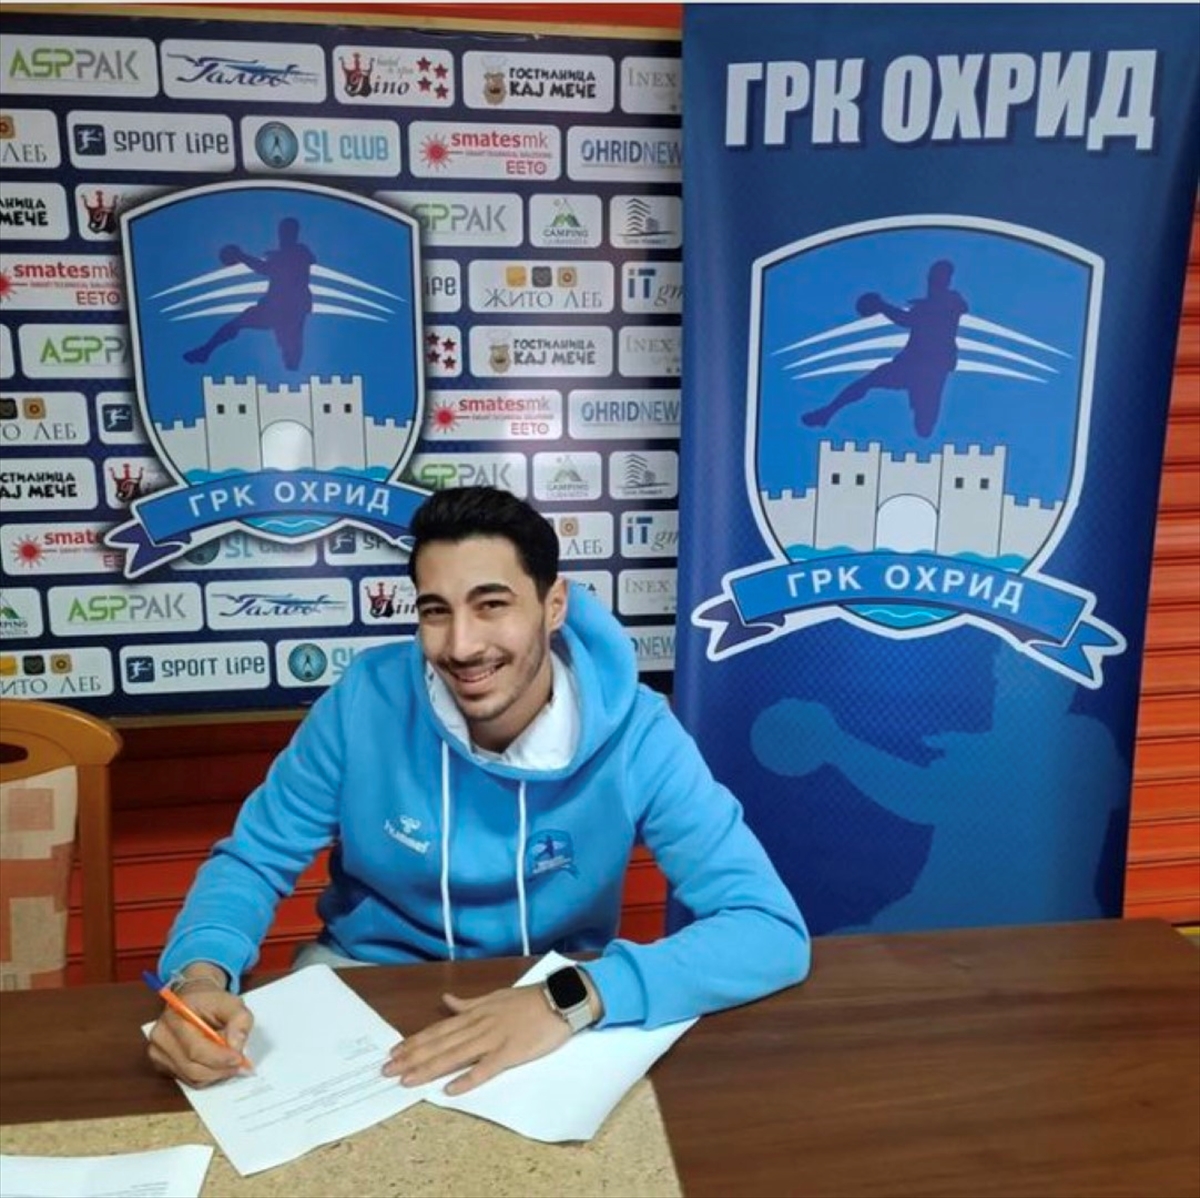 Milli hentbolcu Eray Karakoç, Kuzey Makedonya'nın GRK Ohrid takımına transfer oldu